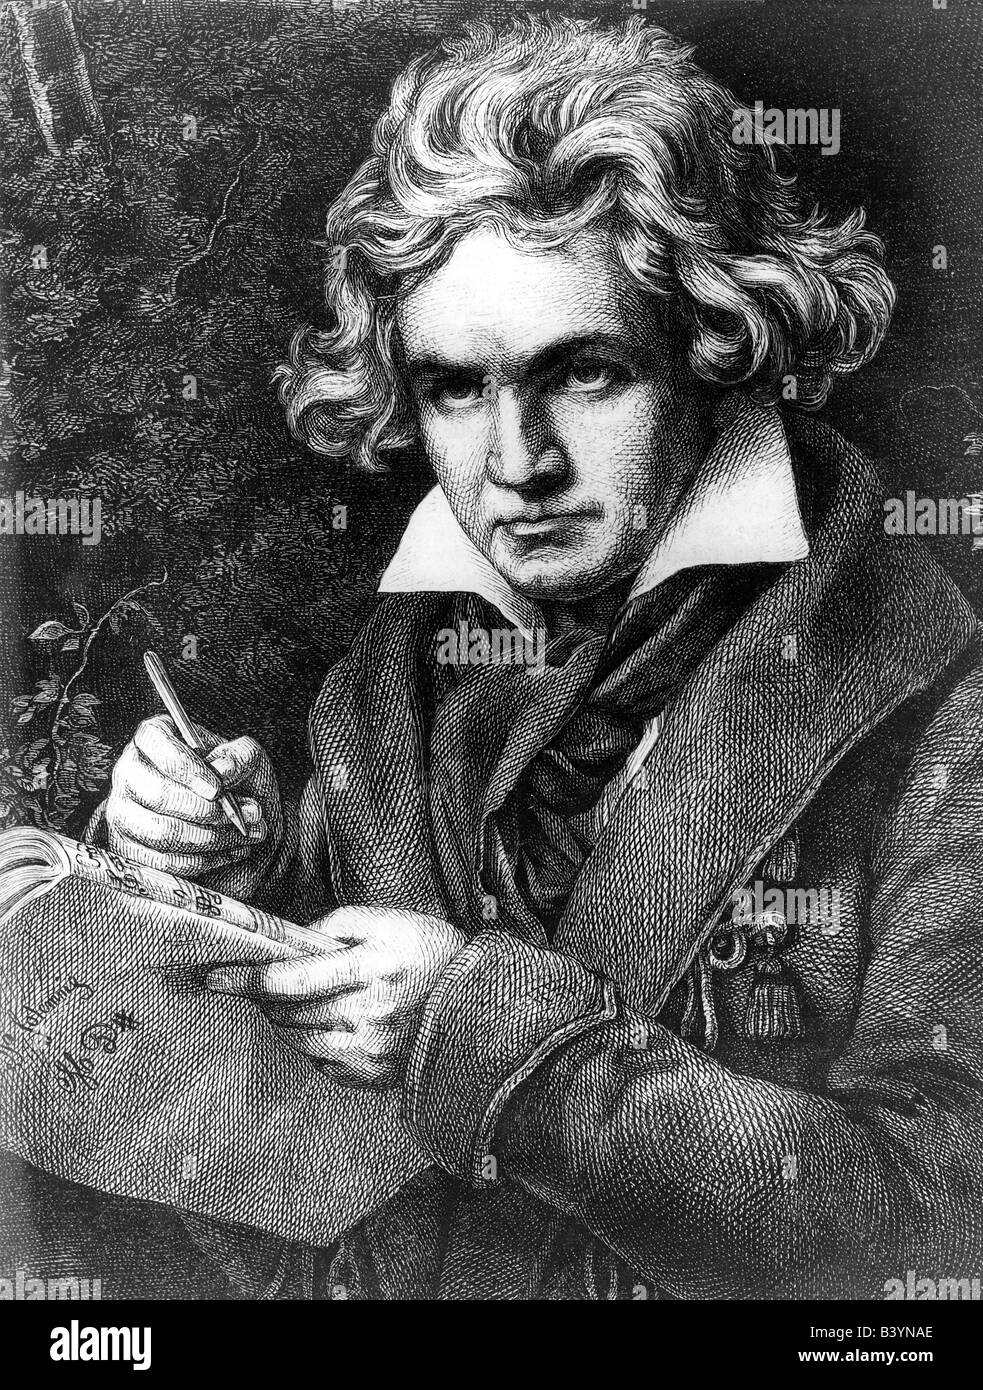 Beethoven, Ludwig van, 17.12.1770 - 26.3.1827, compositeur allemand, demi-longueur, après peinture par Joseph Karl Stieler, gravure par Adolf Neumann (1825 - 1884), 19e siècle , l'artiste n'a pas d'auteur pour être effacé Banque D'Images